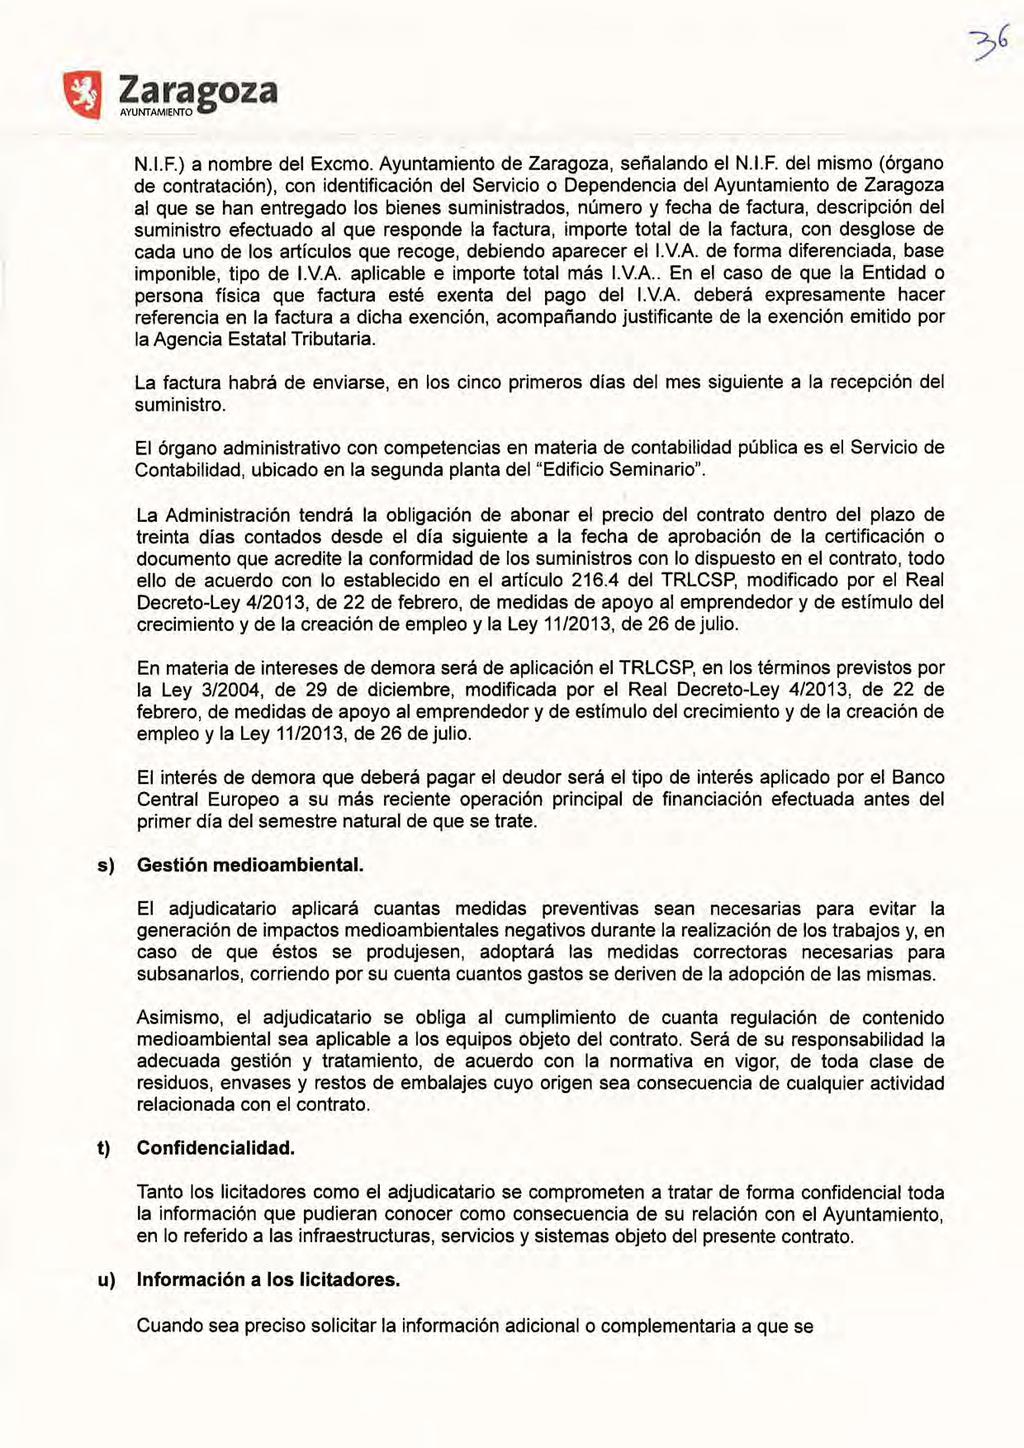 N.LF.) a nombre del Excmo. Ayuntamiento de Zaragoza, señalando el N.LF. del mismo (órgano de contratación), con identificación del Servicio o Dependencia del Ayuntamiento de Zaragoza al que se han